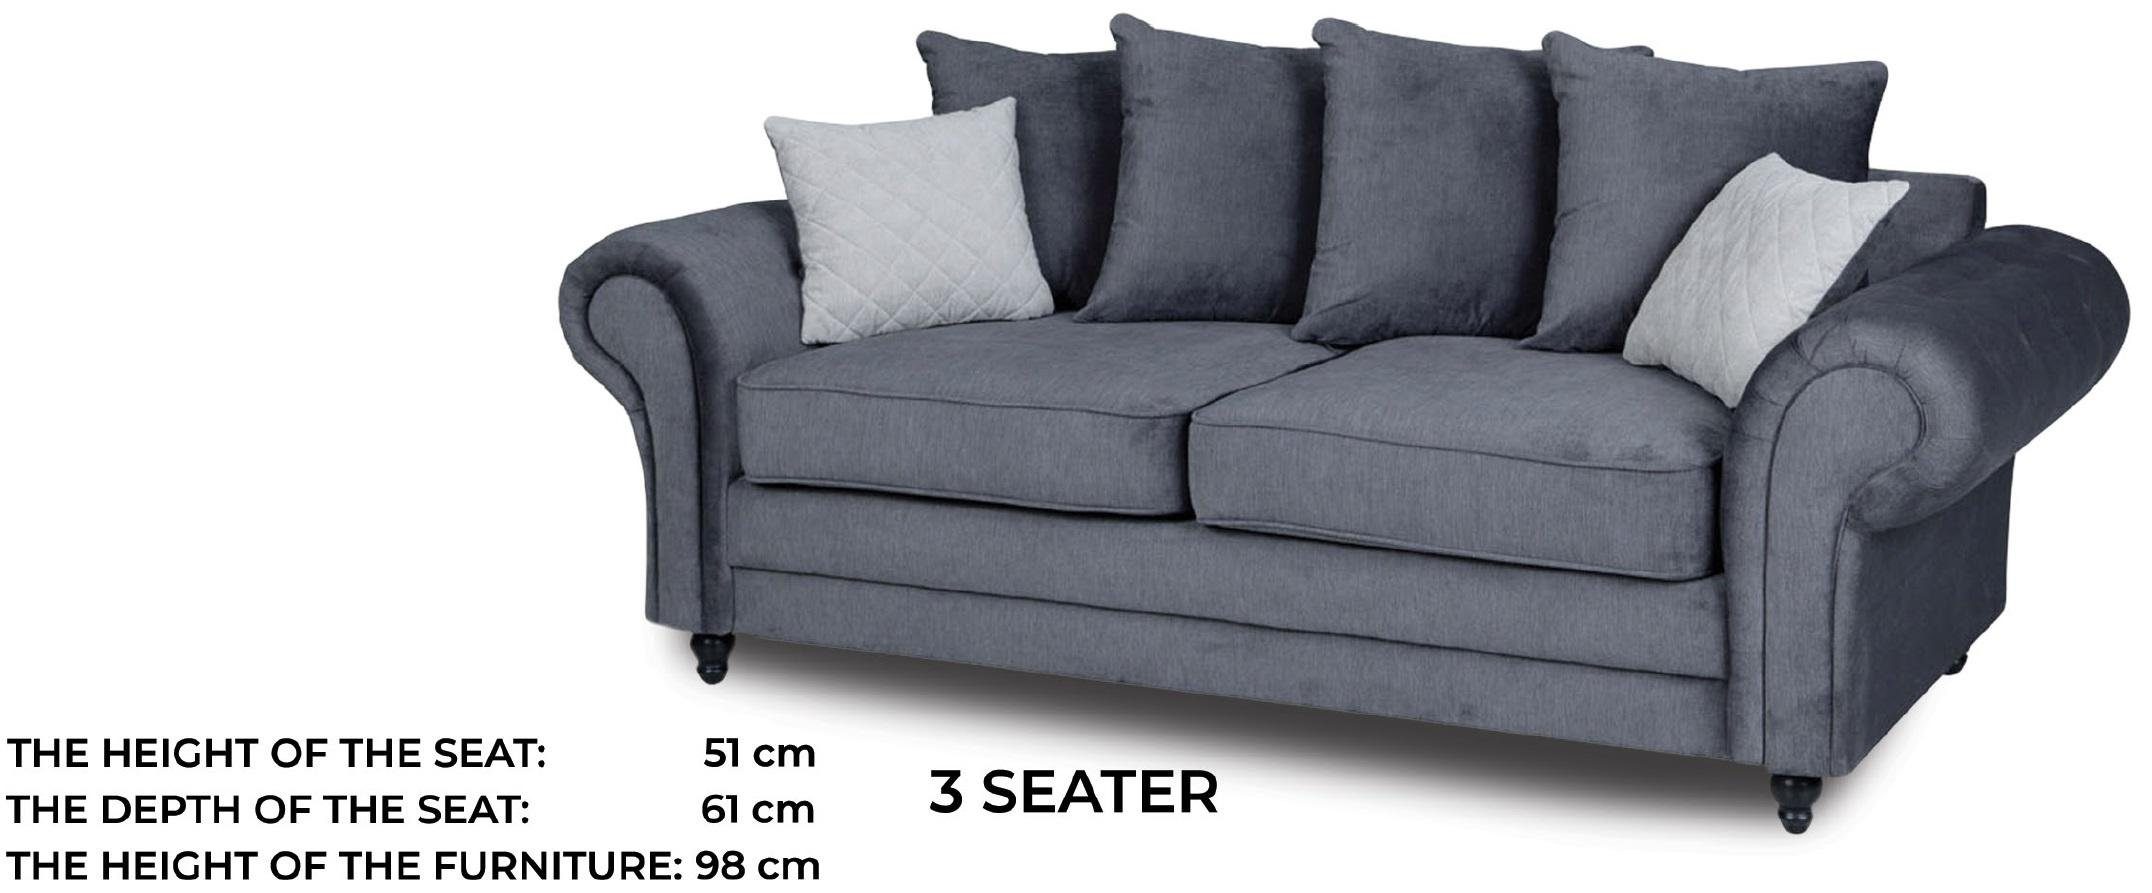 JVmoebel Sofa Luxus Grauer Polster Neu, Stilvoll Dreisitzer Couch Europe Made moderne in